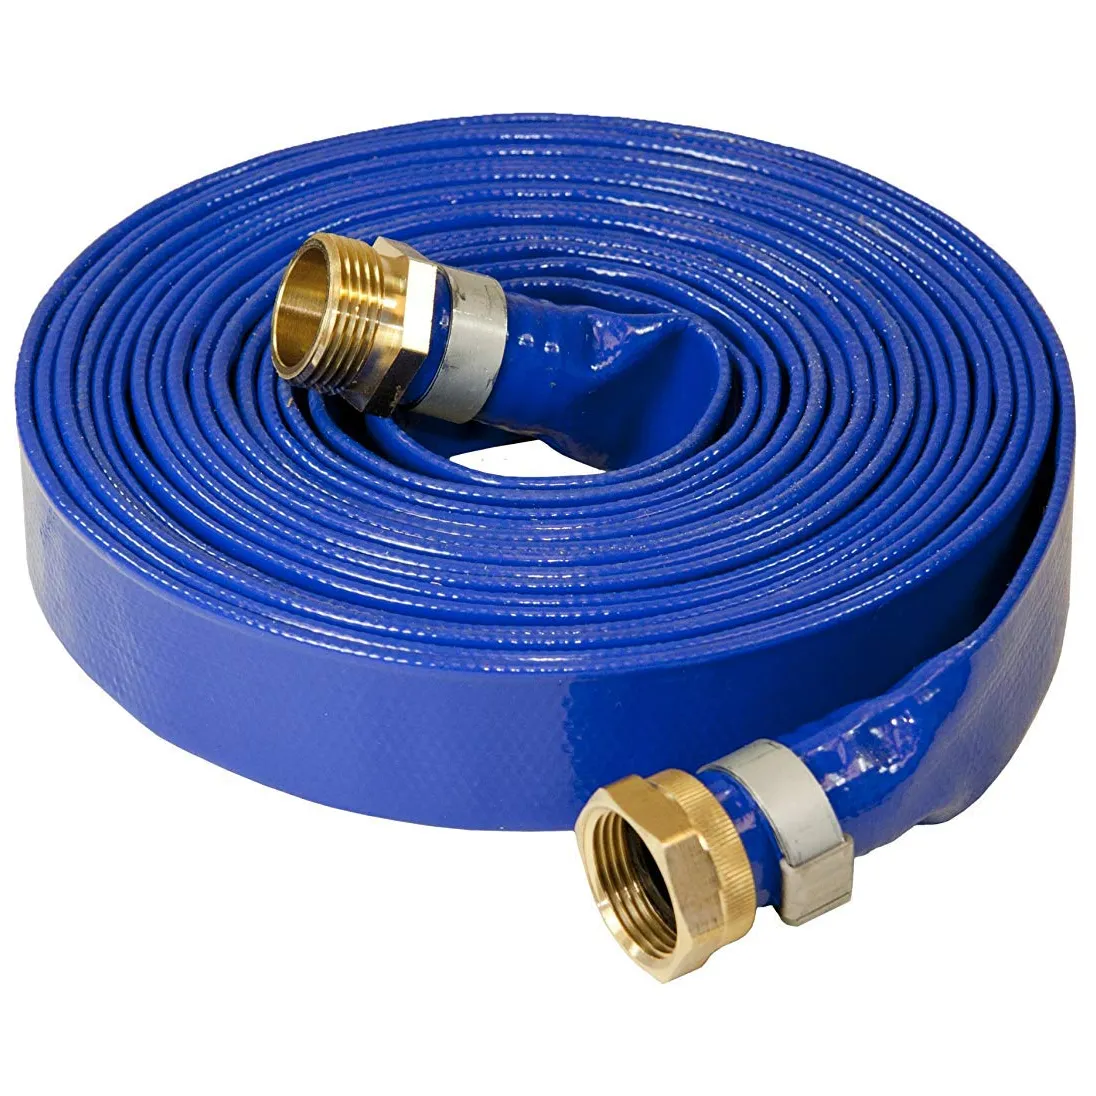 Alta pressão agrícola irrigação flexível bomba descarga de água PVC Amarelo/Azul/Vermelho Lay Flat Mangueira/Tubo/Tubo